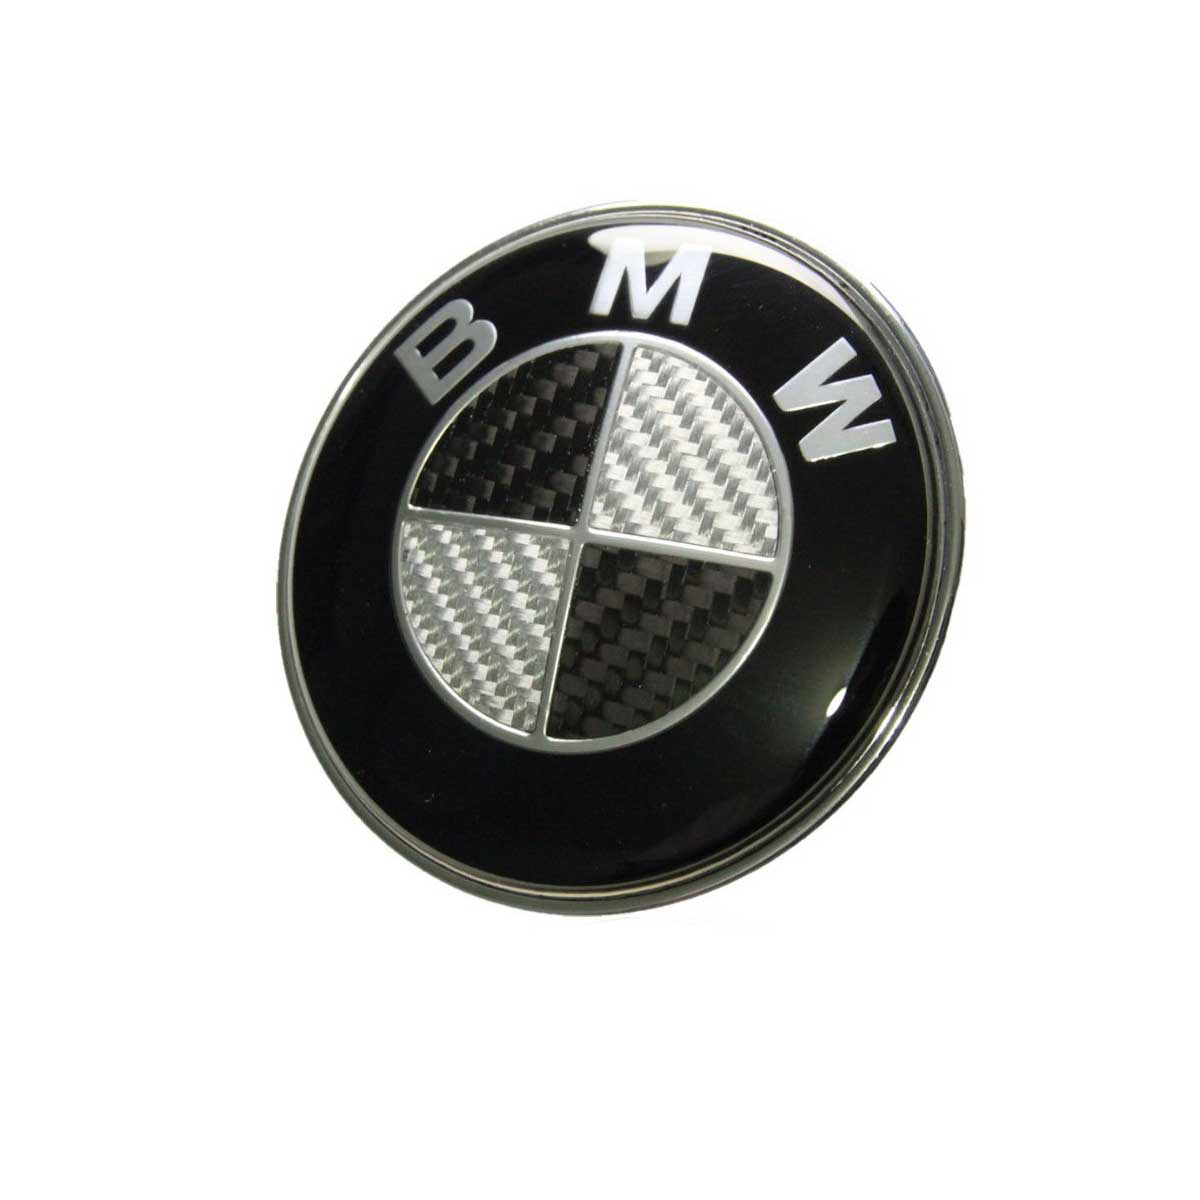 Emblema Insignia BMW Carbono Para Capot/Baúl De 82mm o 73mm - IRP